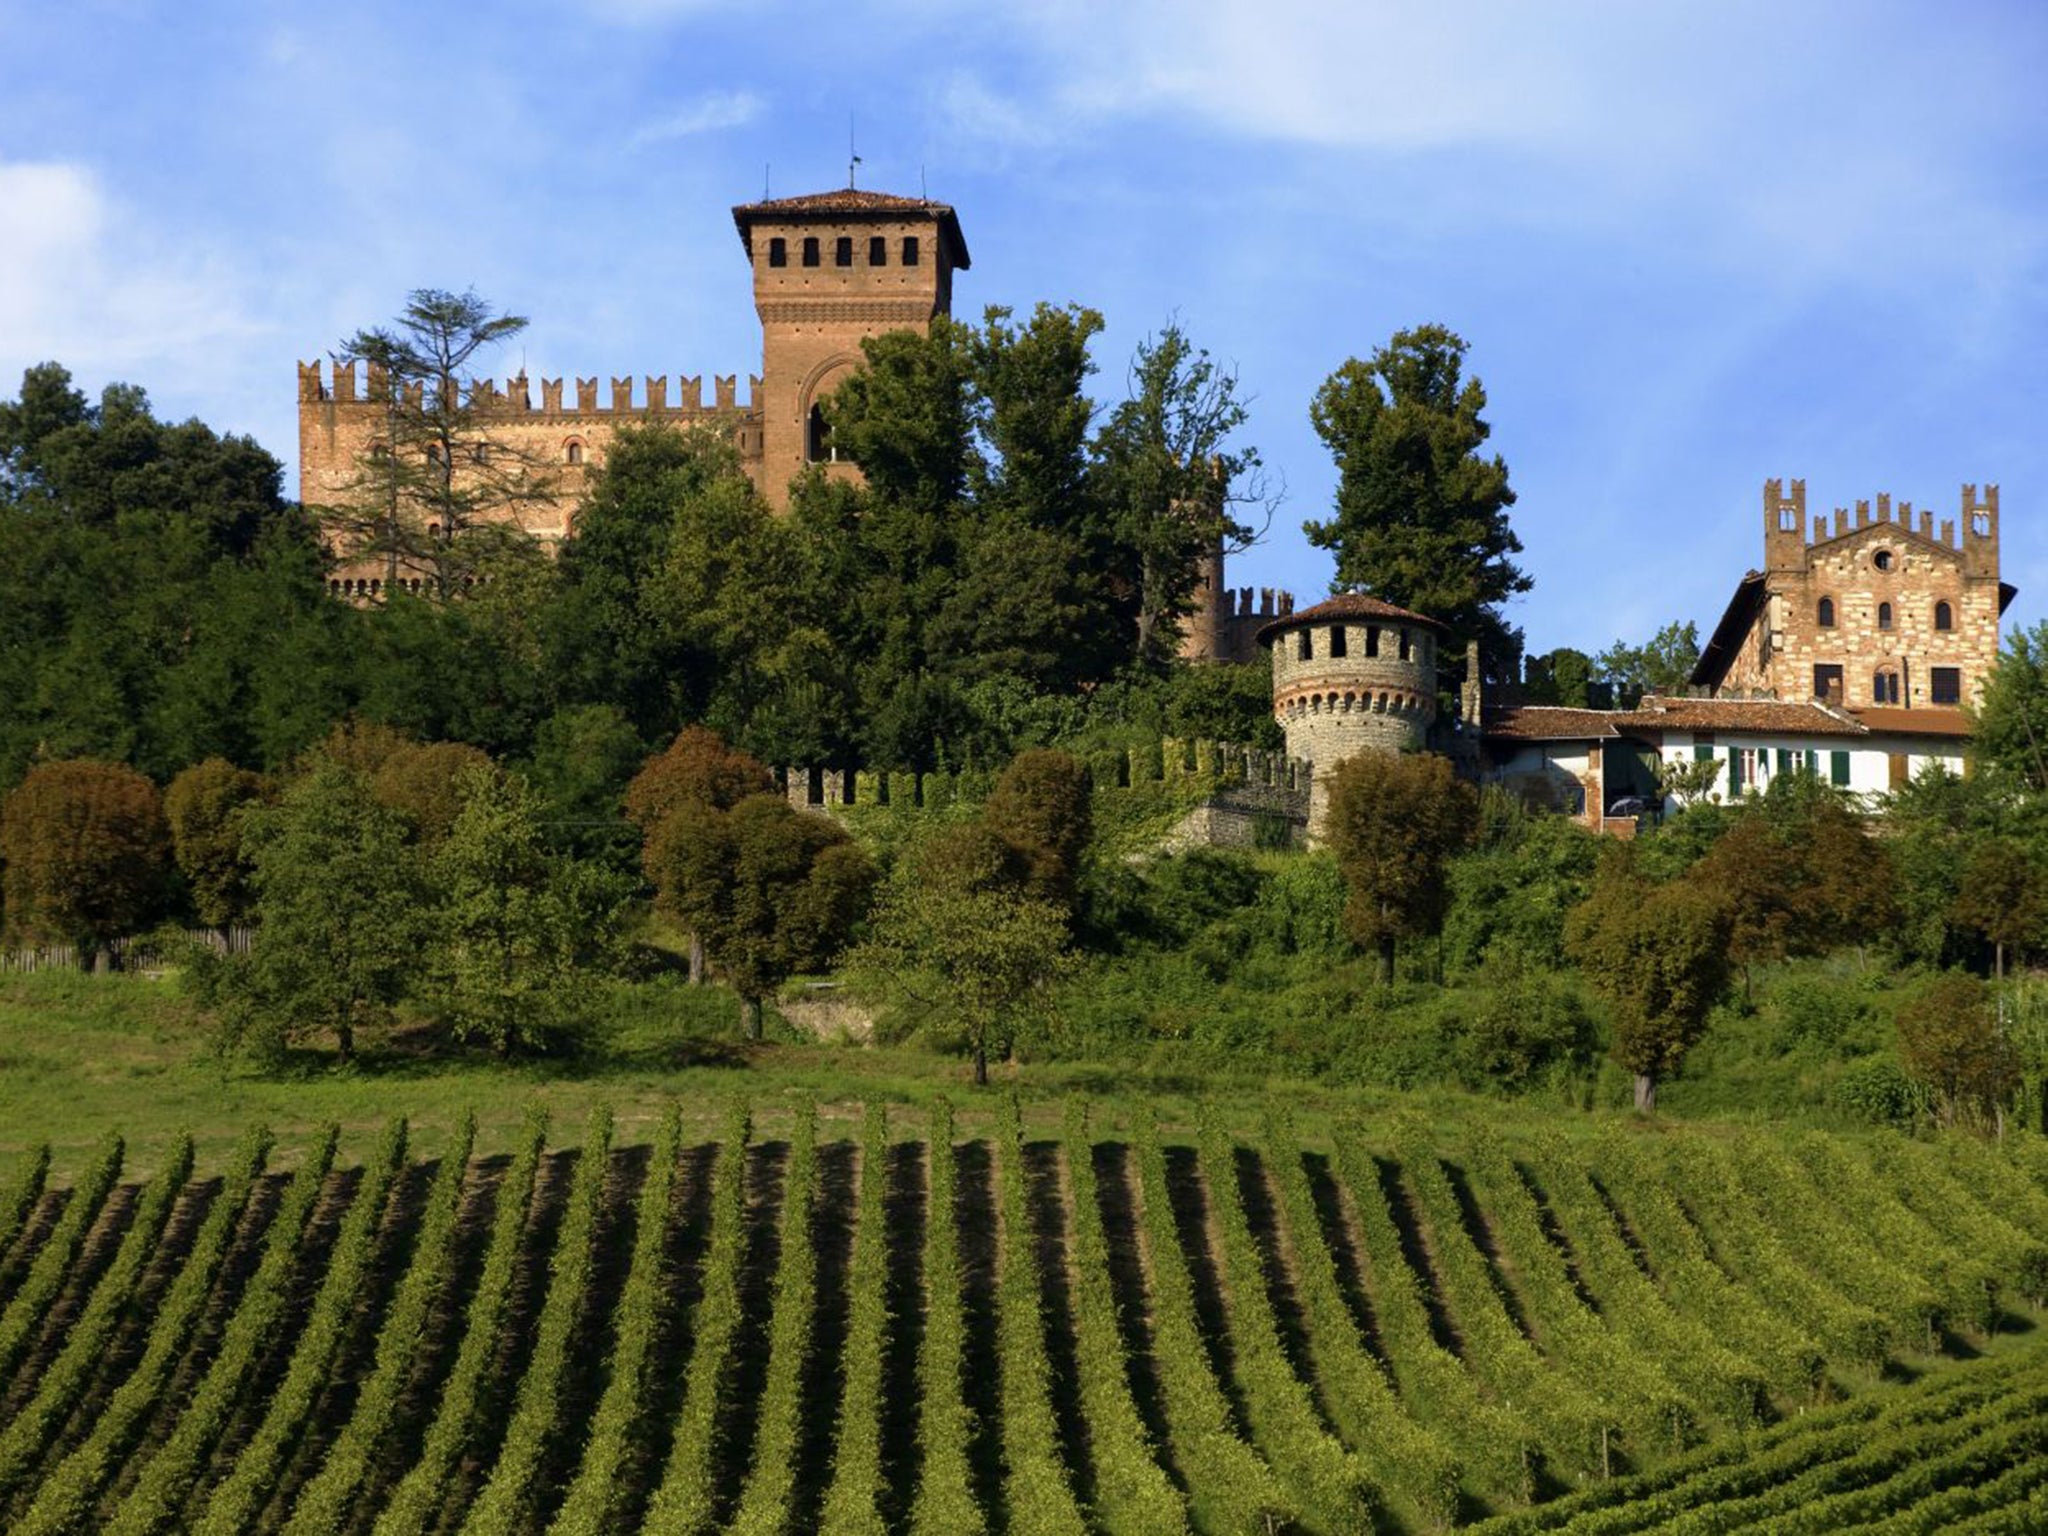 La Bella Vita: Castello di Gabbiano Monferrato is one of the 40 participating mansions and castles